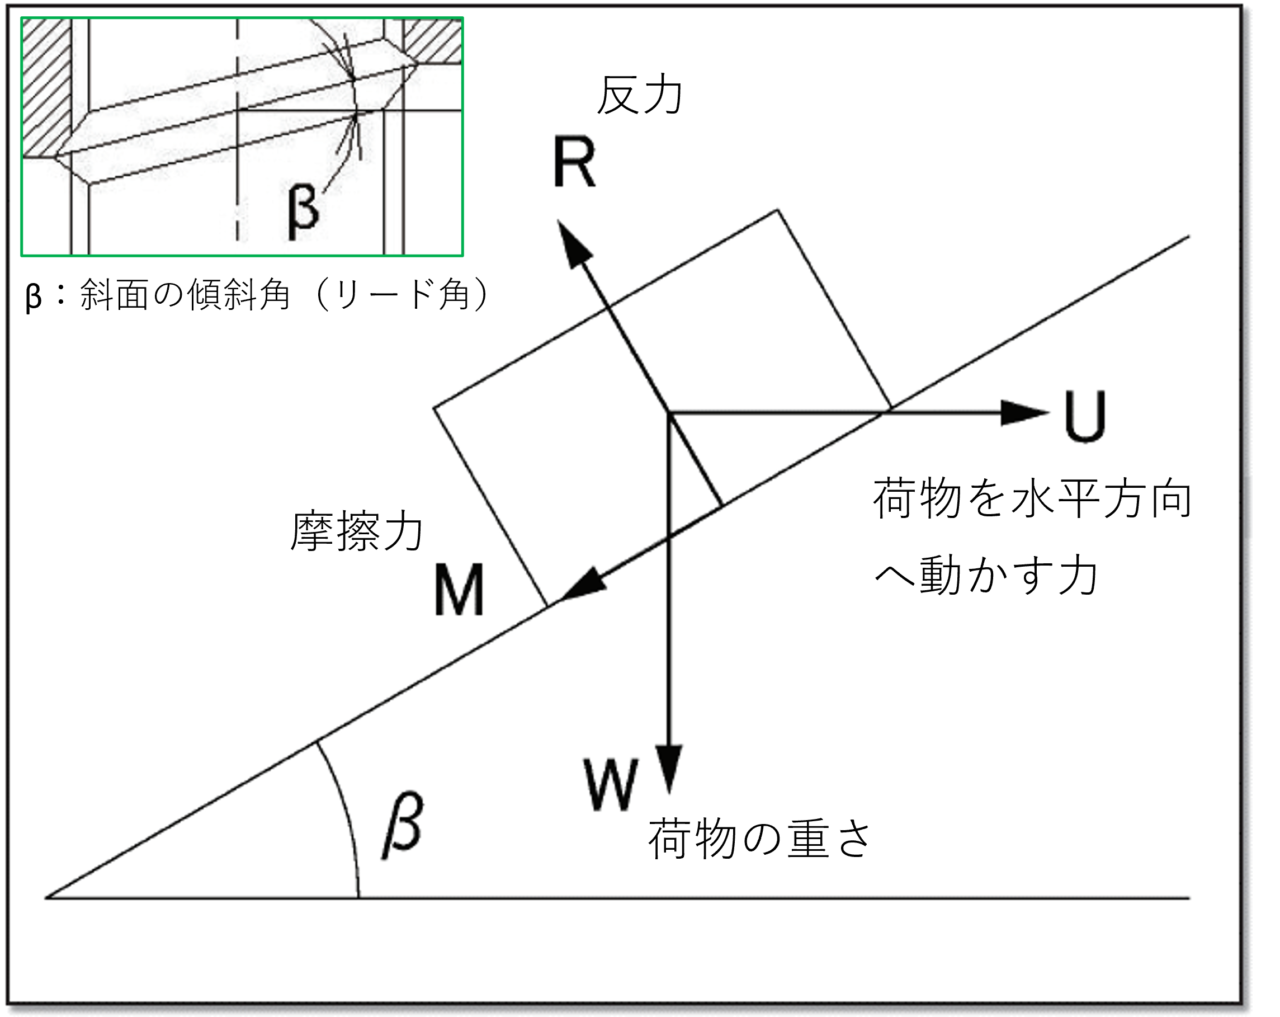 図1．説明図（斜面の原理）